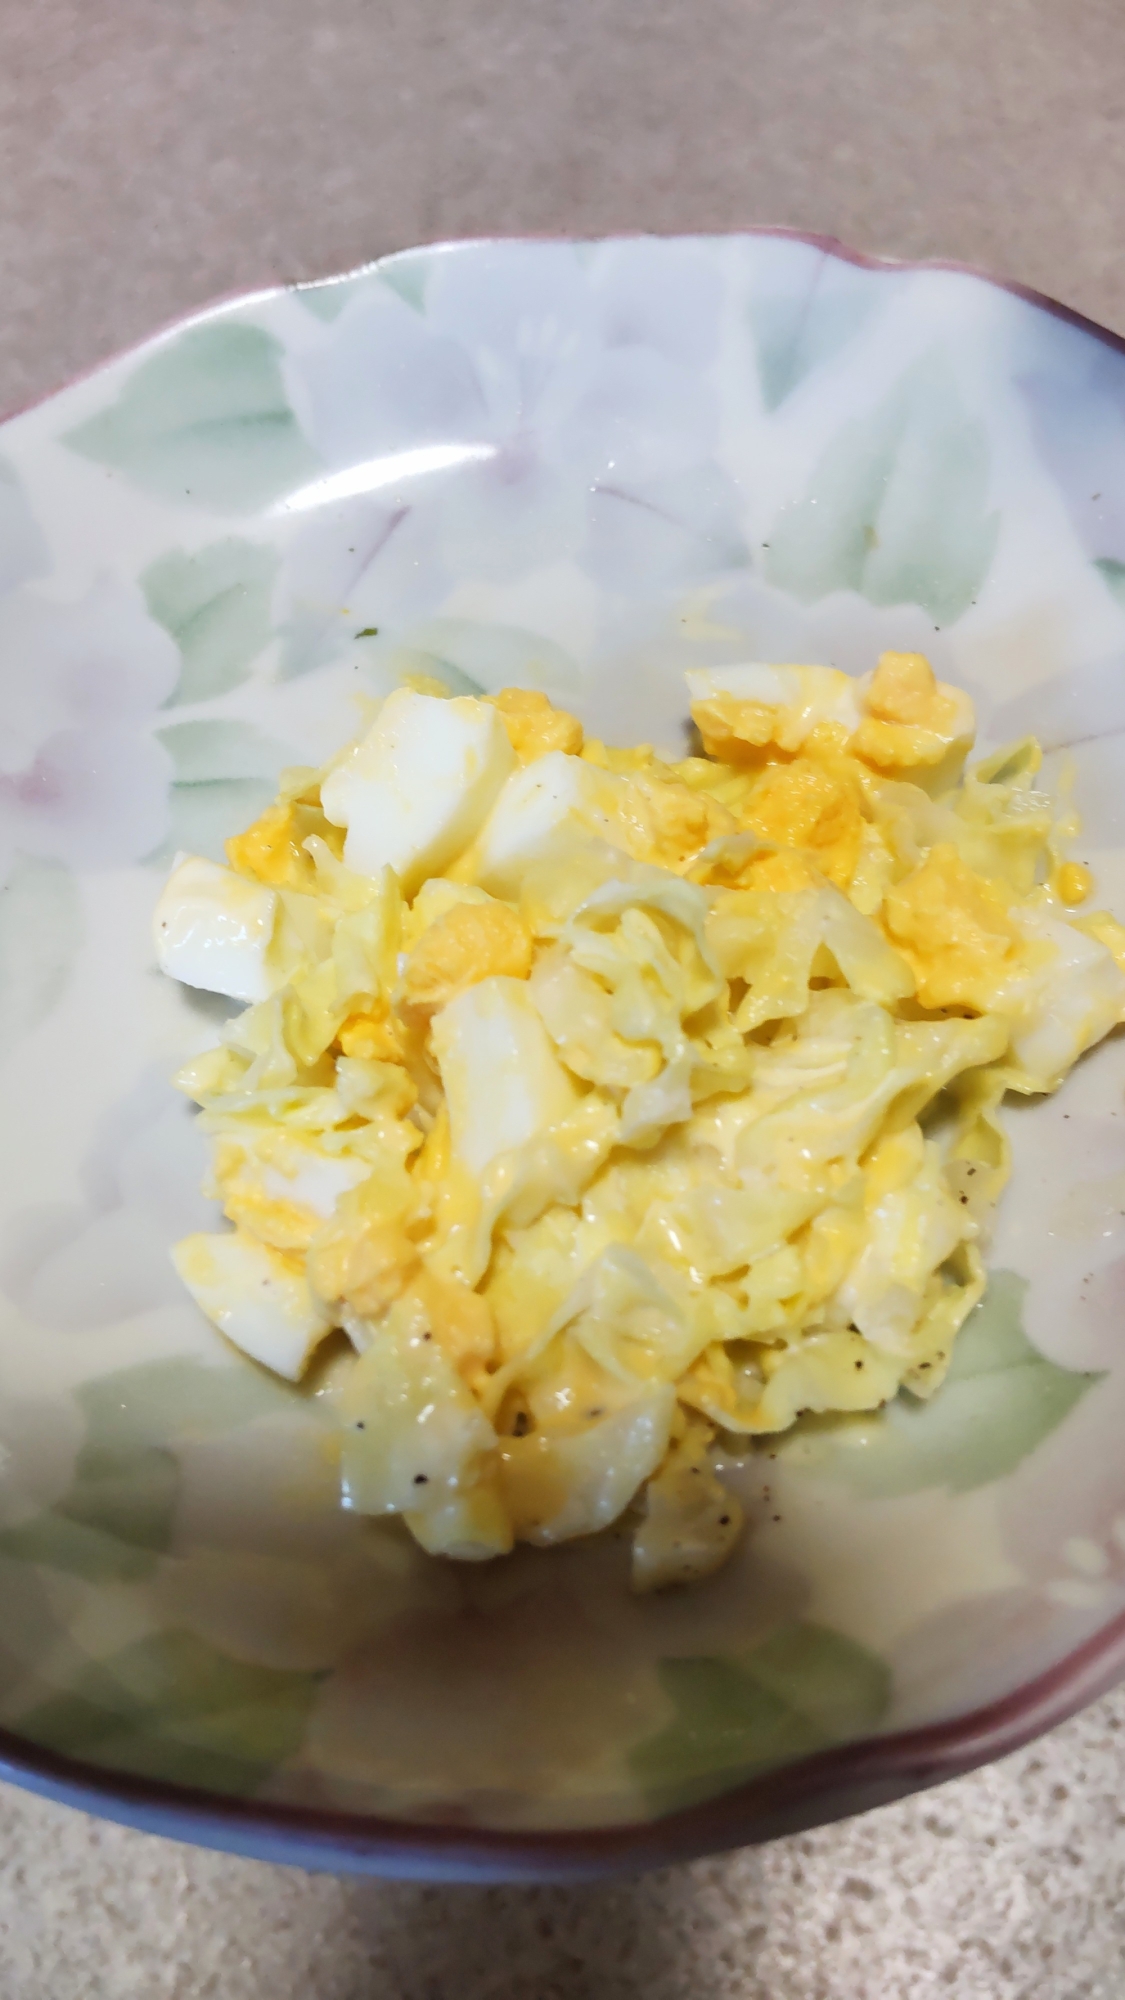 キャベツ卵サラダ